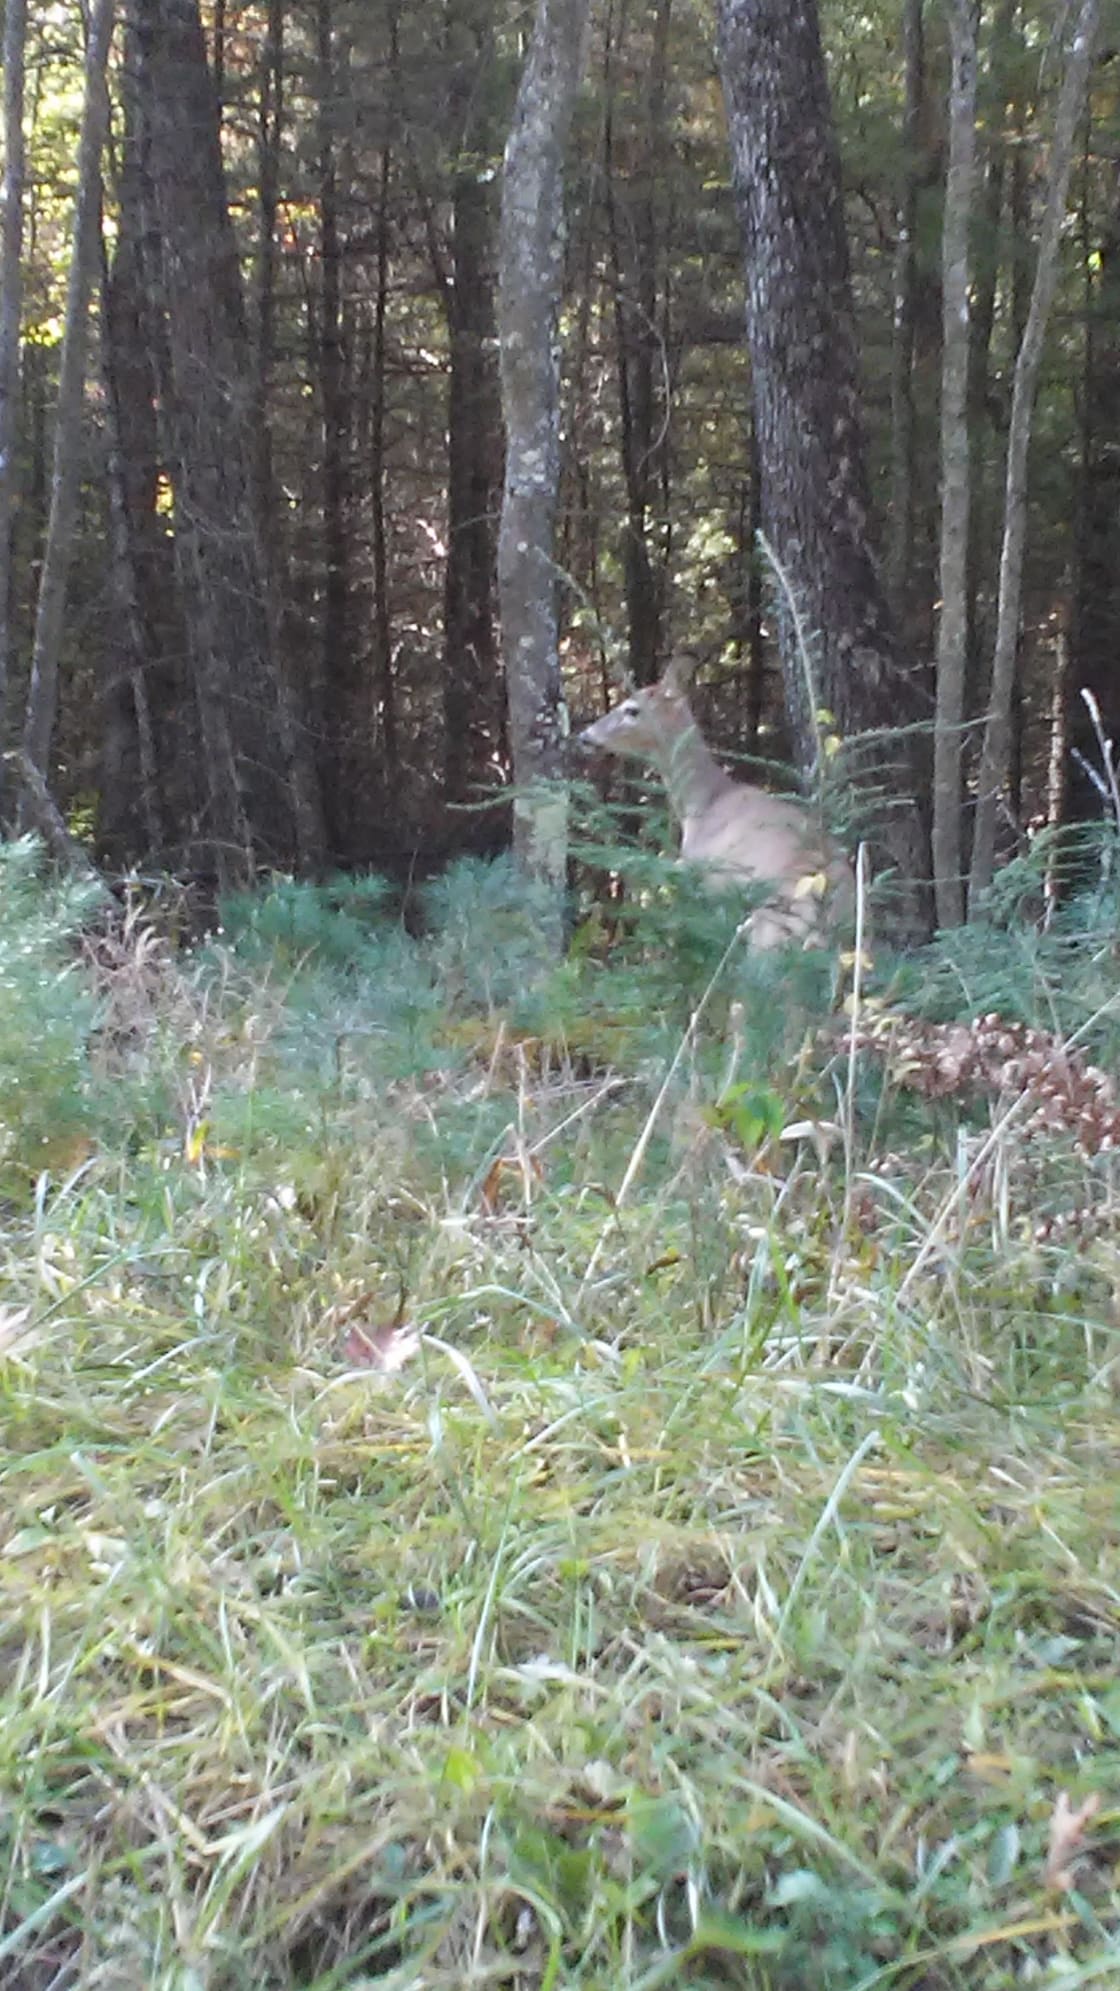 Deer siting onsite